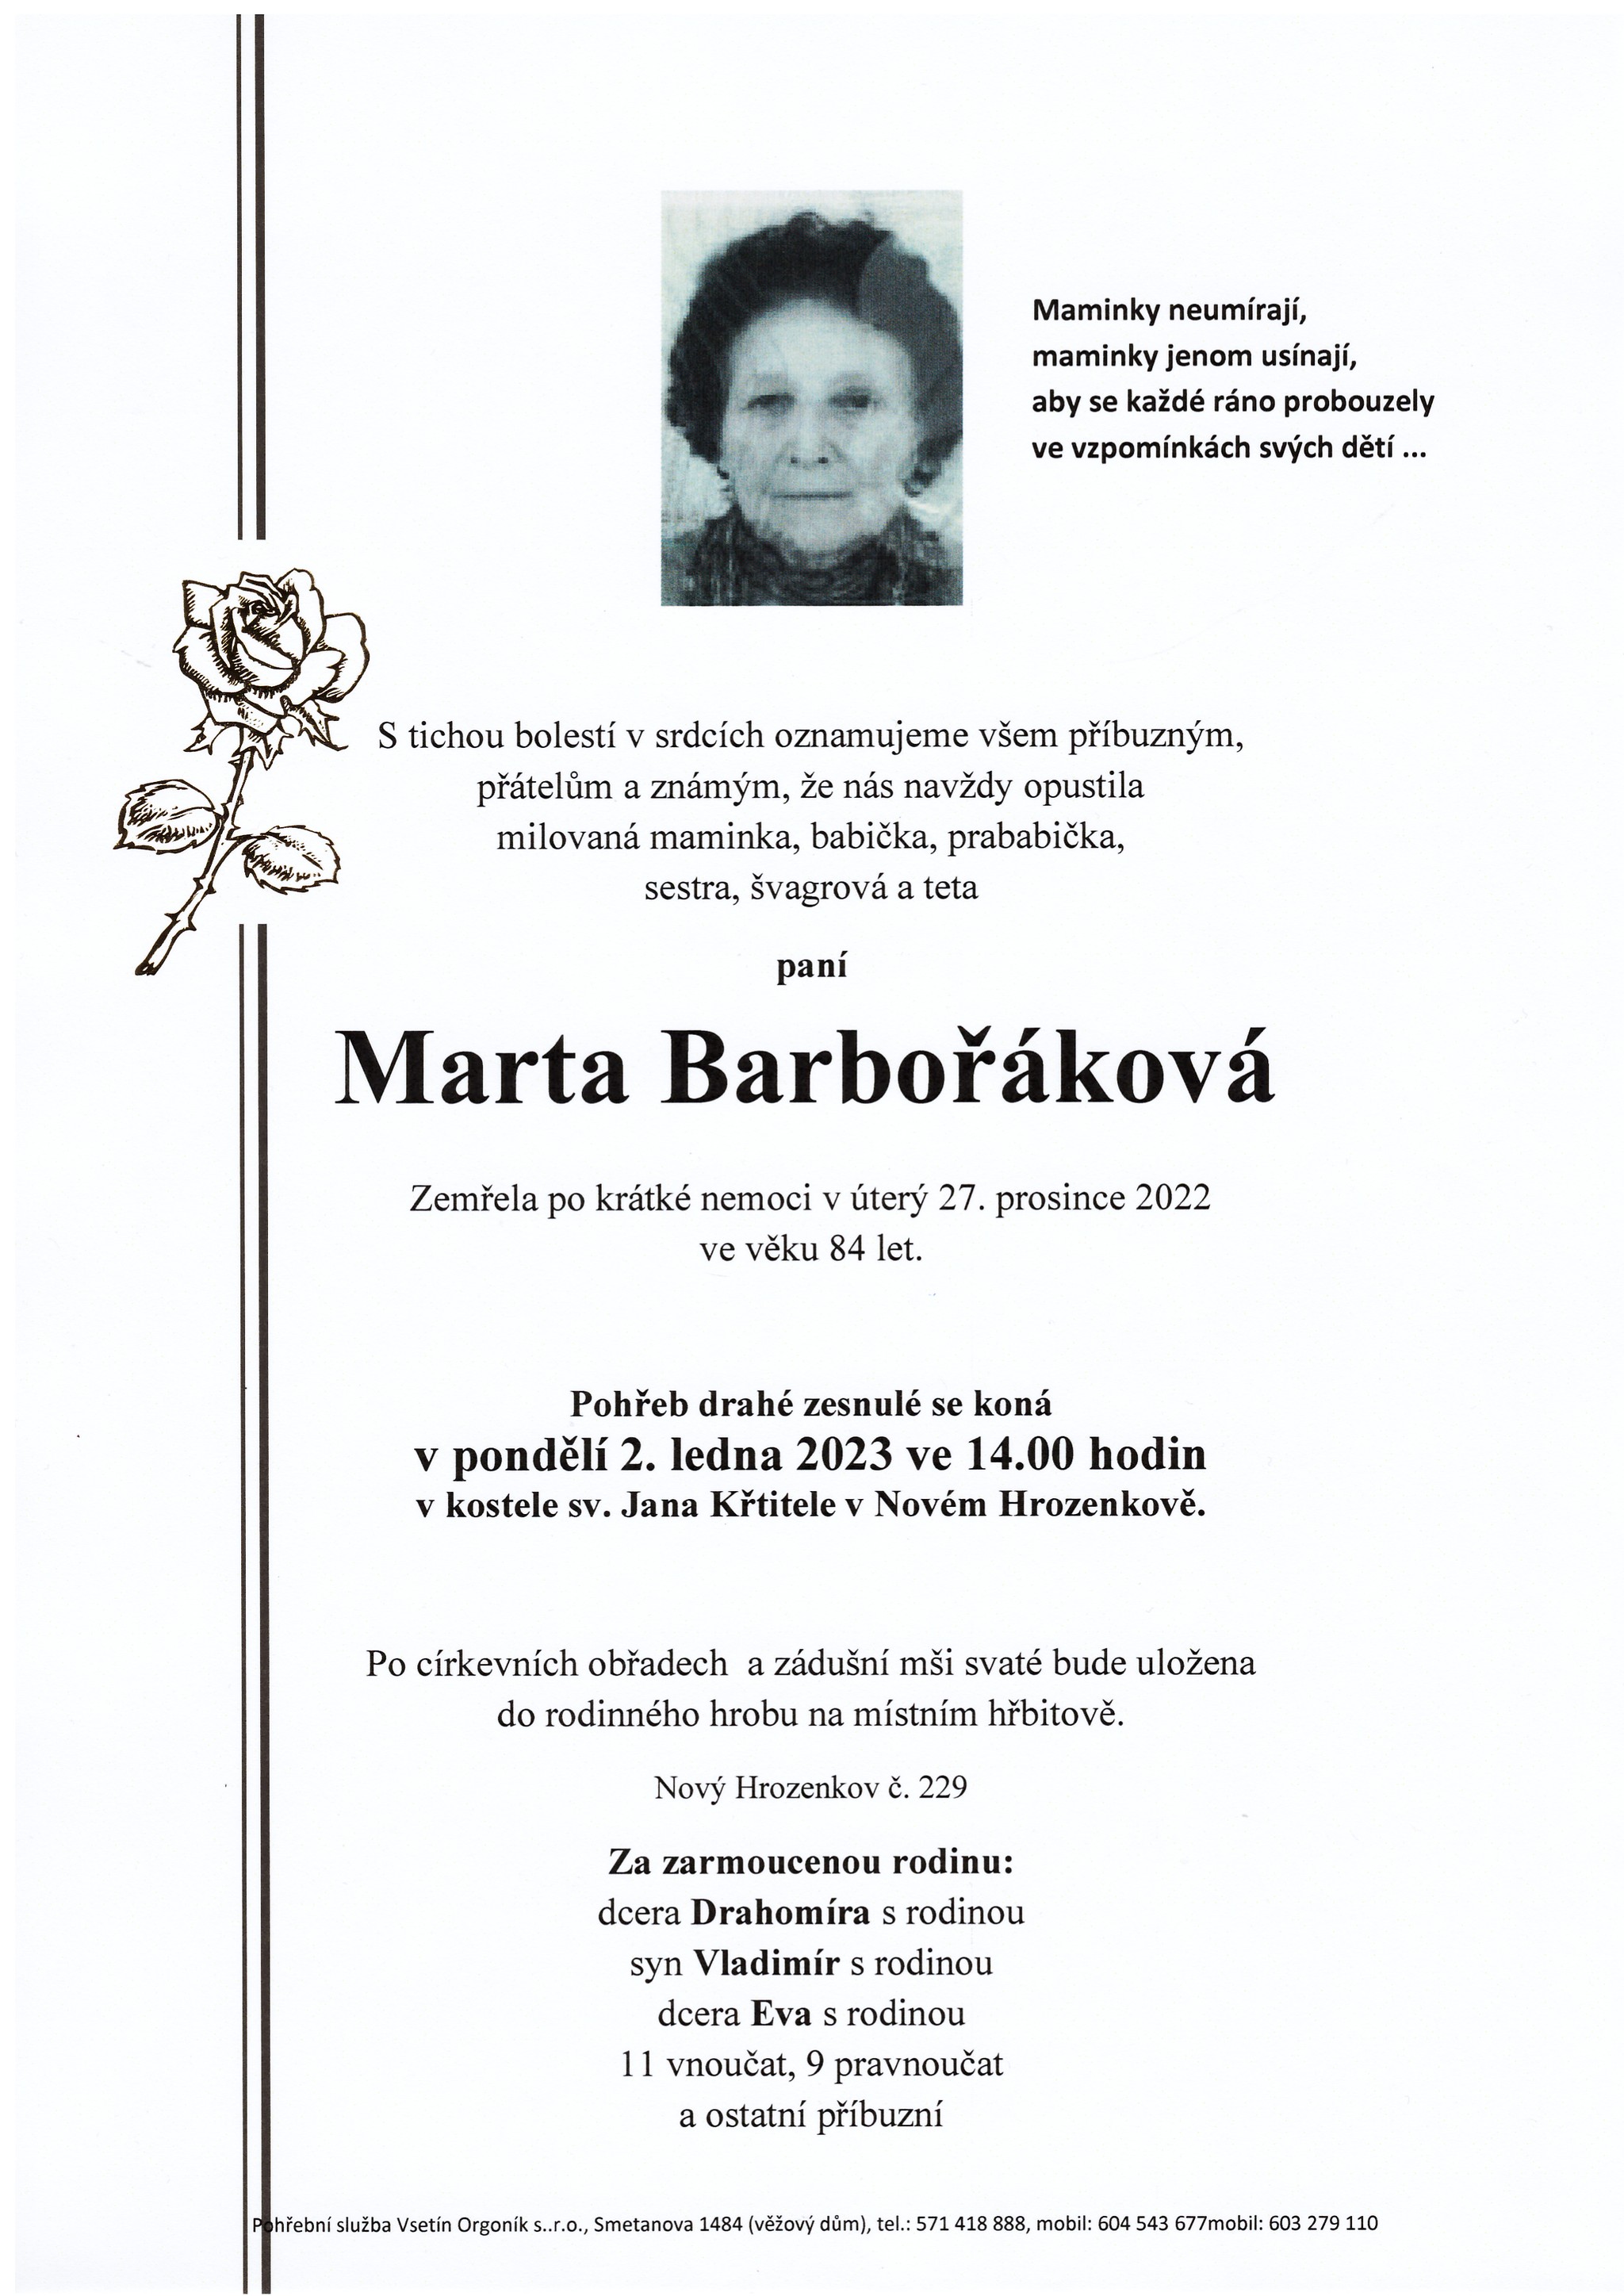 Marta Barbořáková